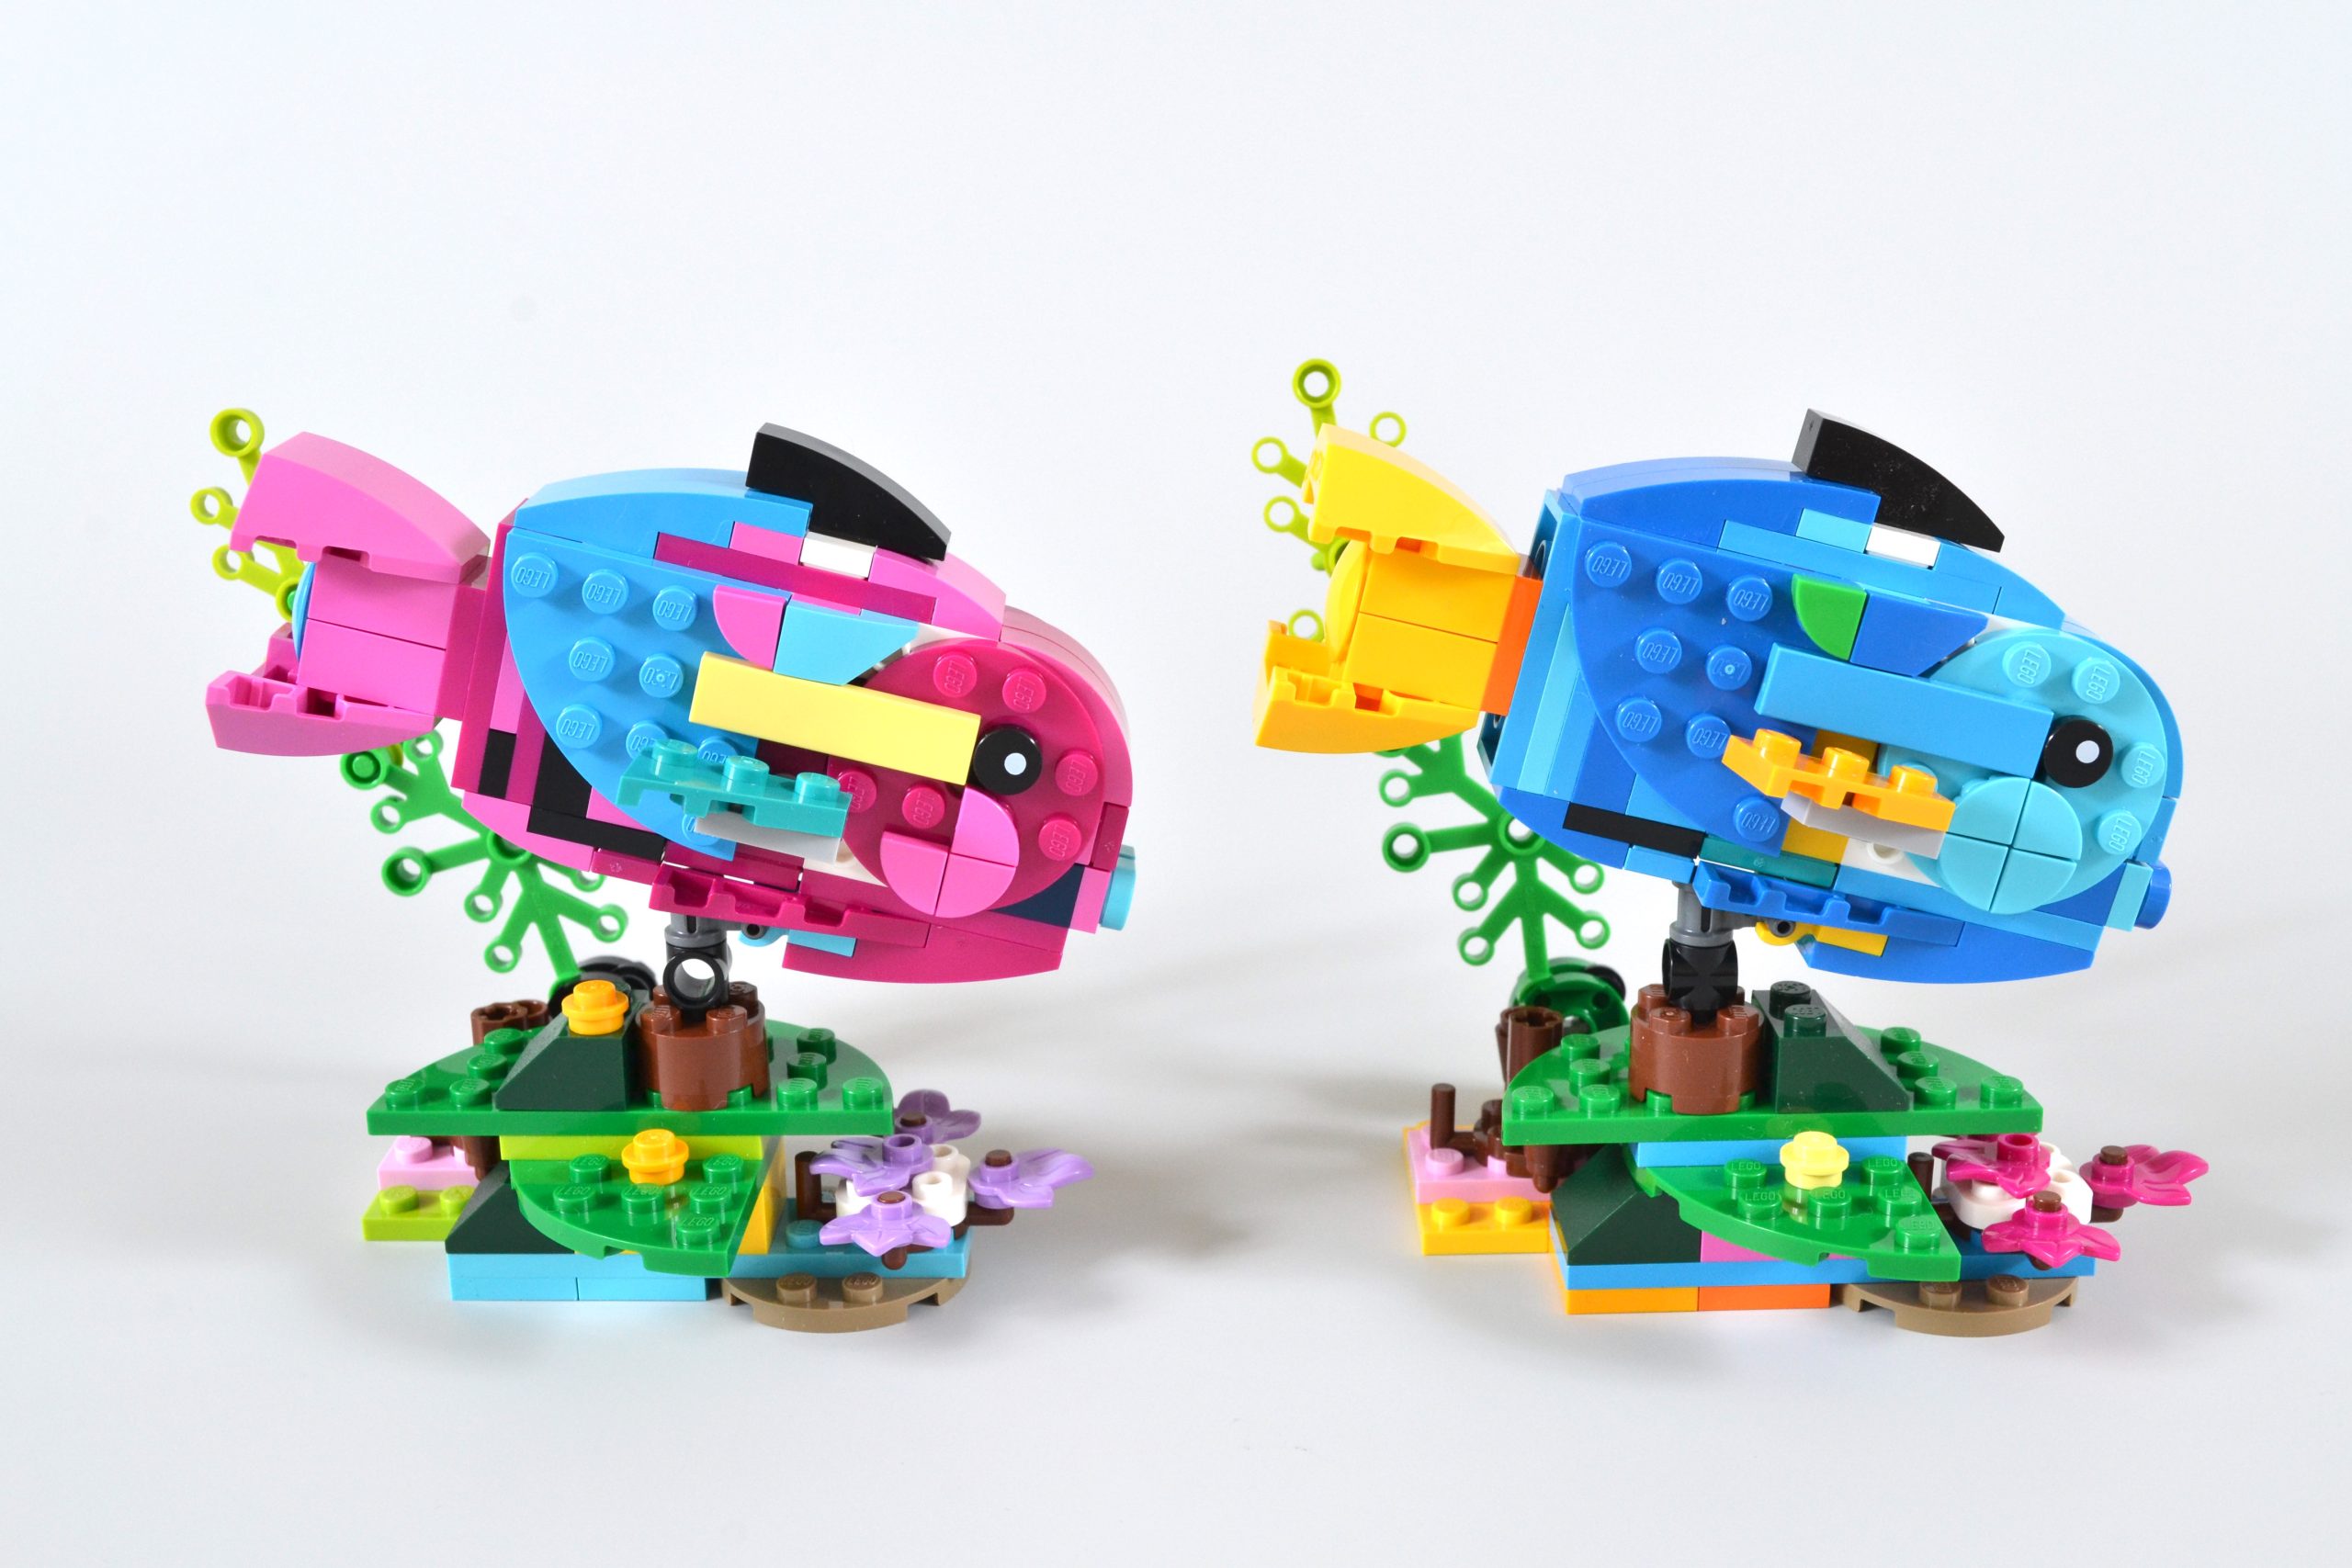 Le perroquet exotique - LEGO® Creator Expert - 31136